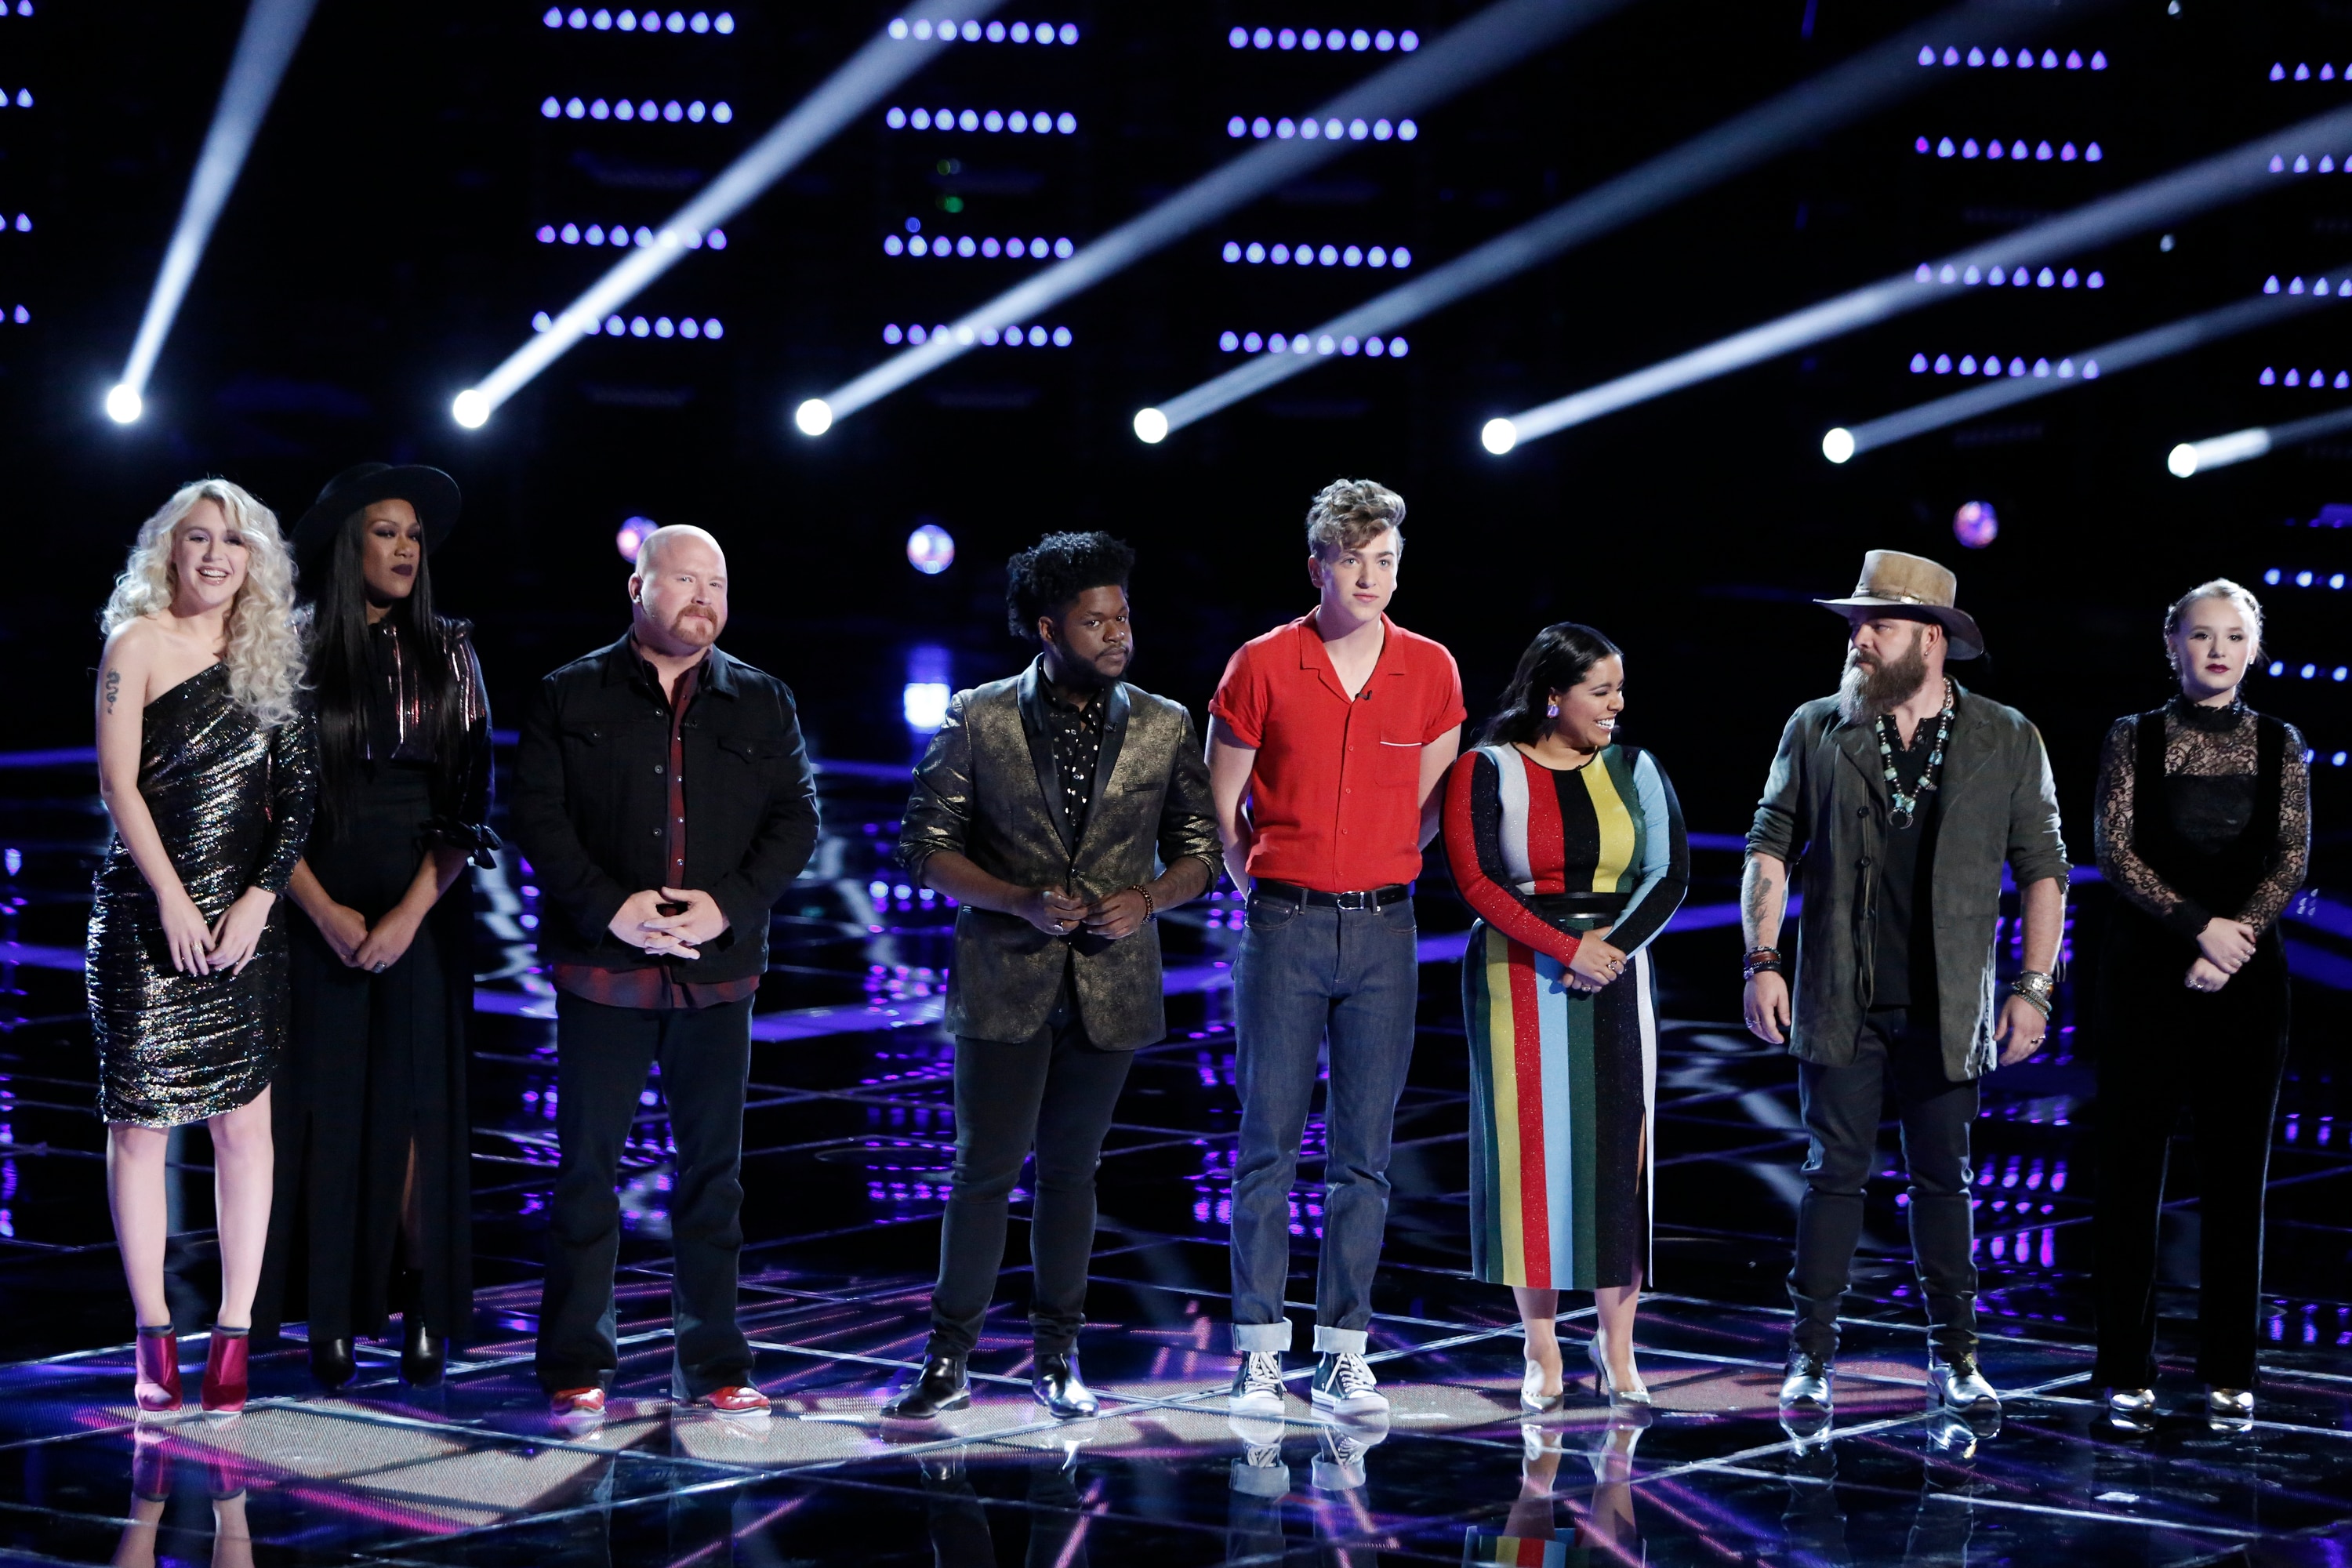 The Voice: Live Semi-Final Results Photo: 3042835 - NBC.com